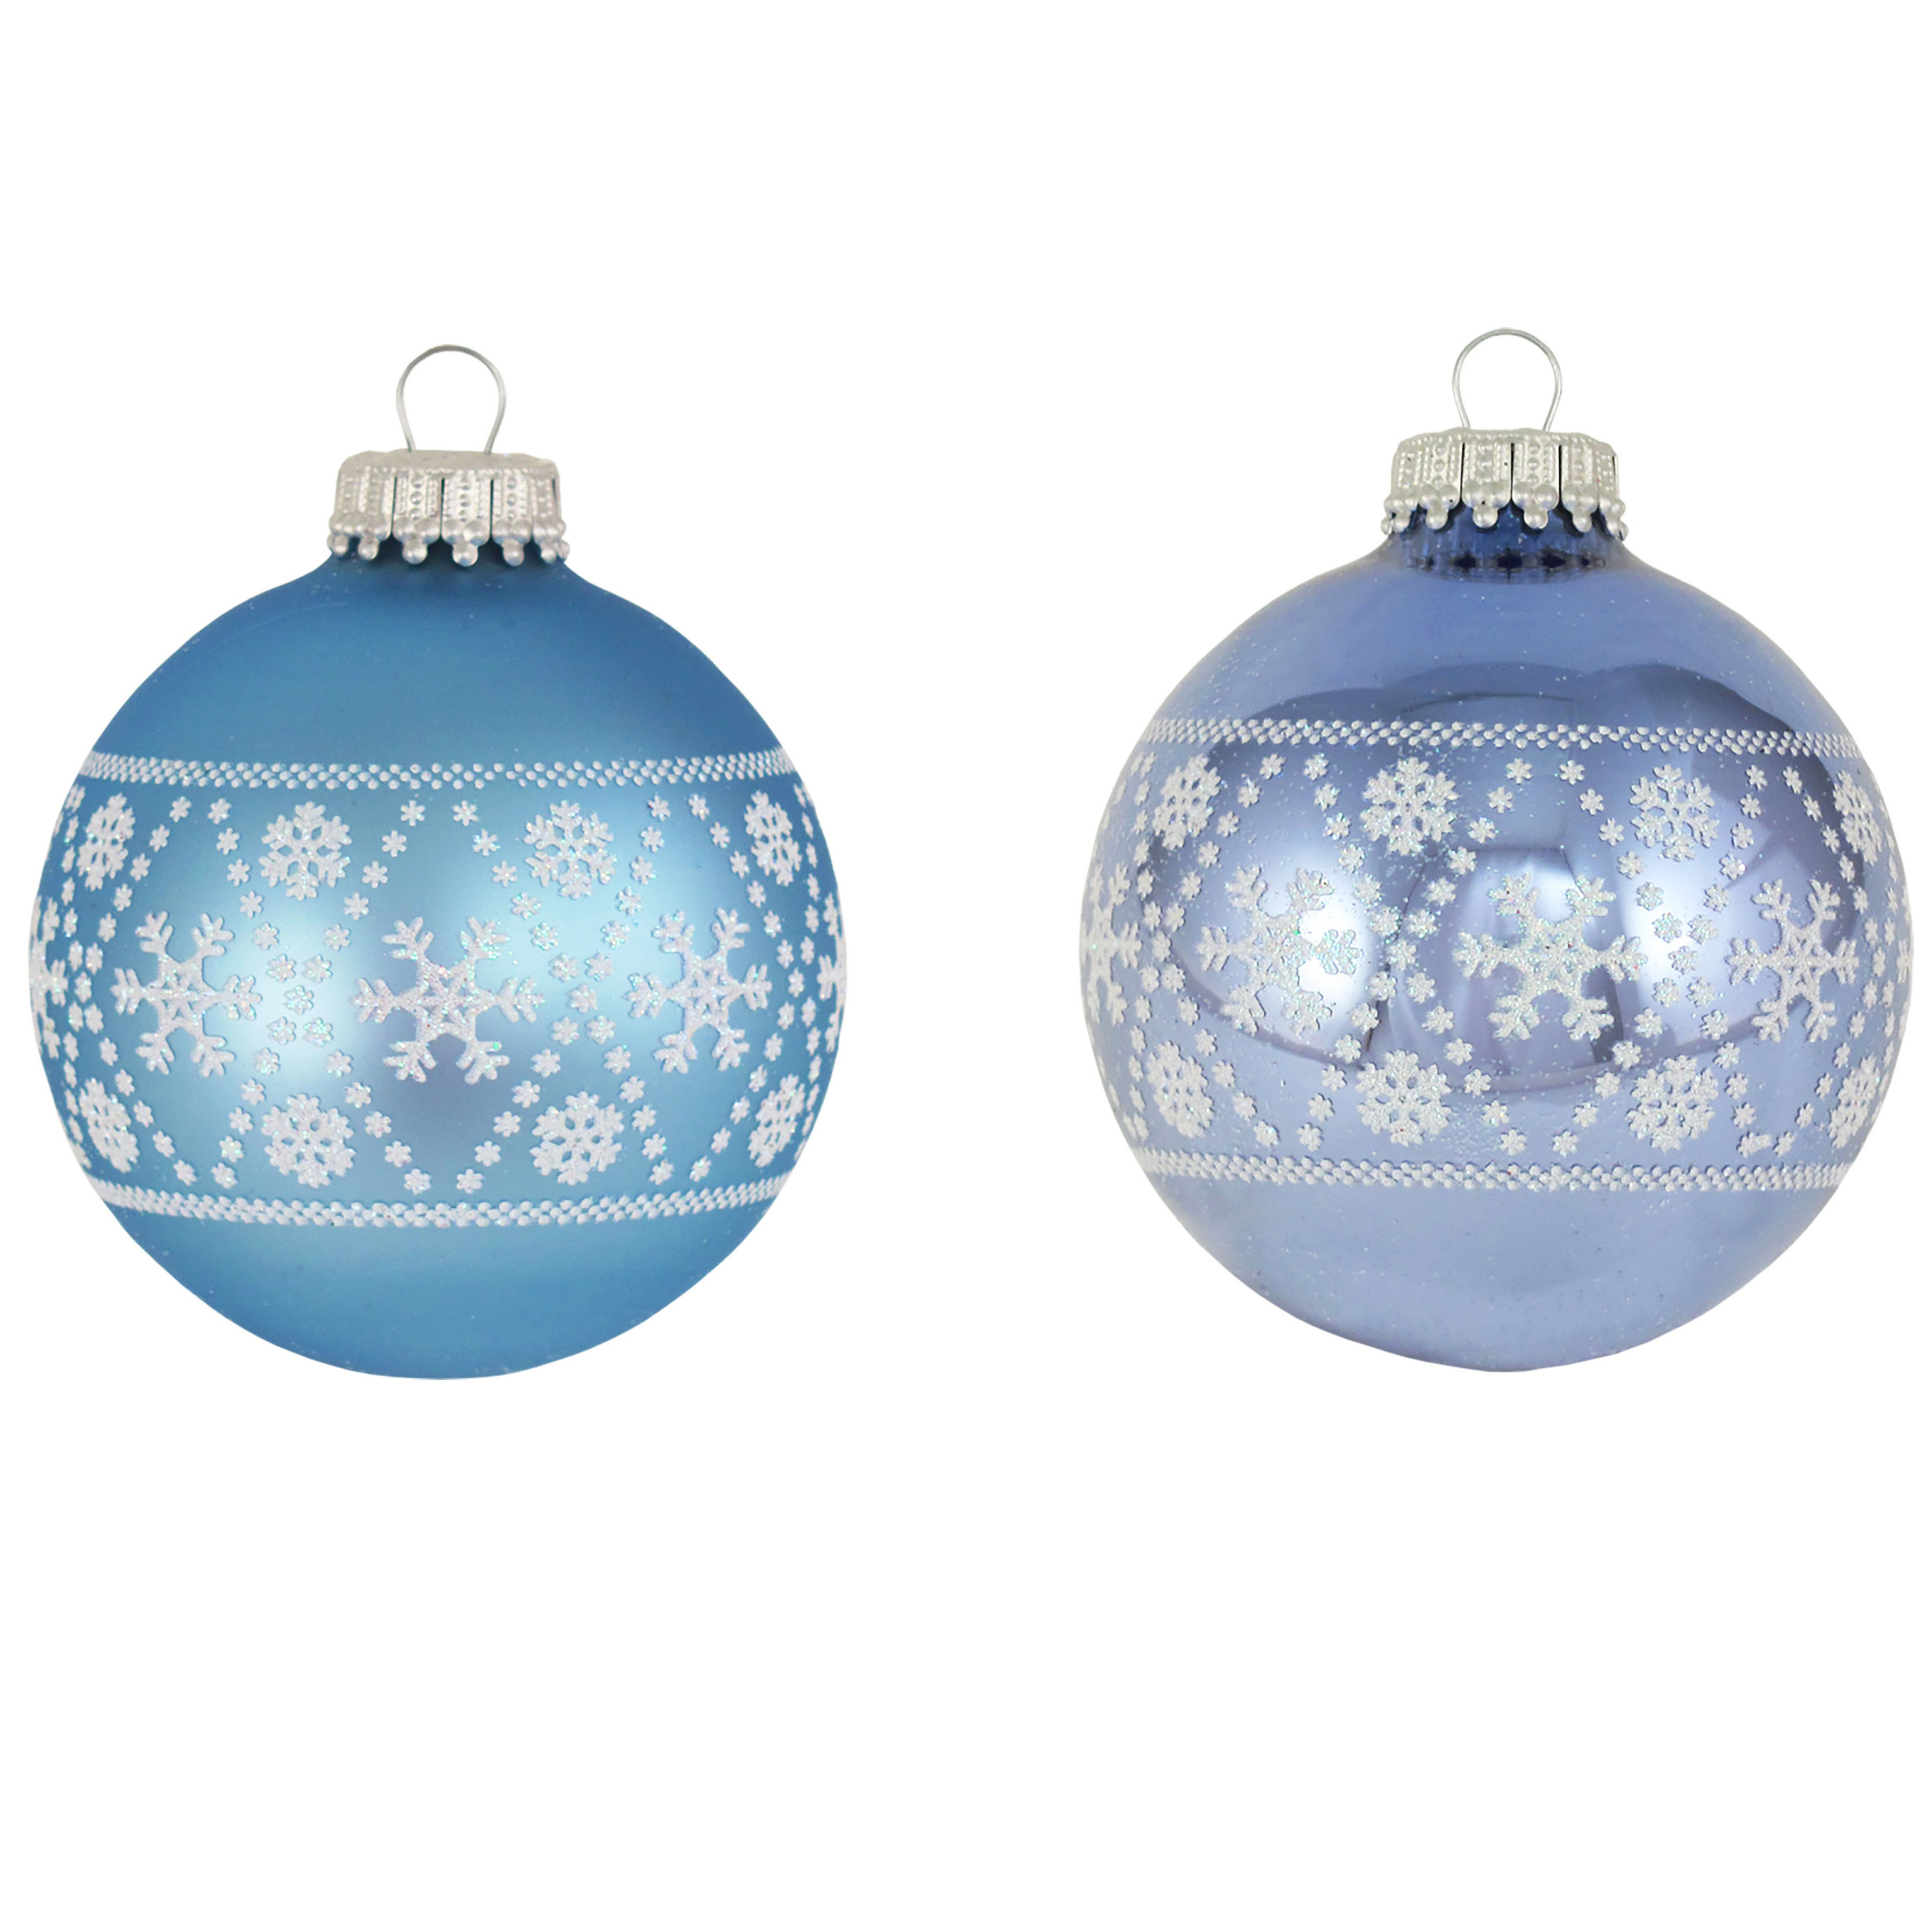 8x Luxe blauwe glazen kerstballen met witte sneeuwvlokken 7 cm